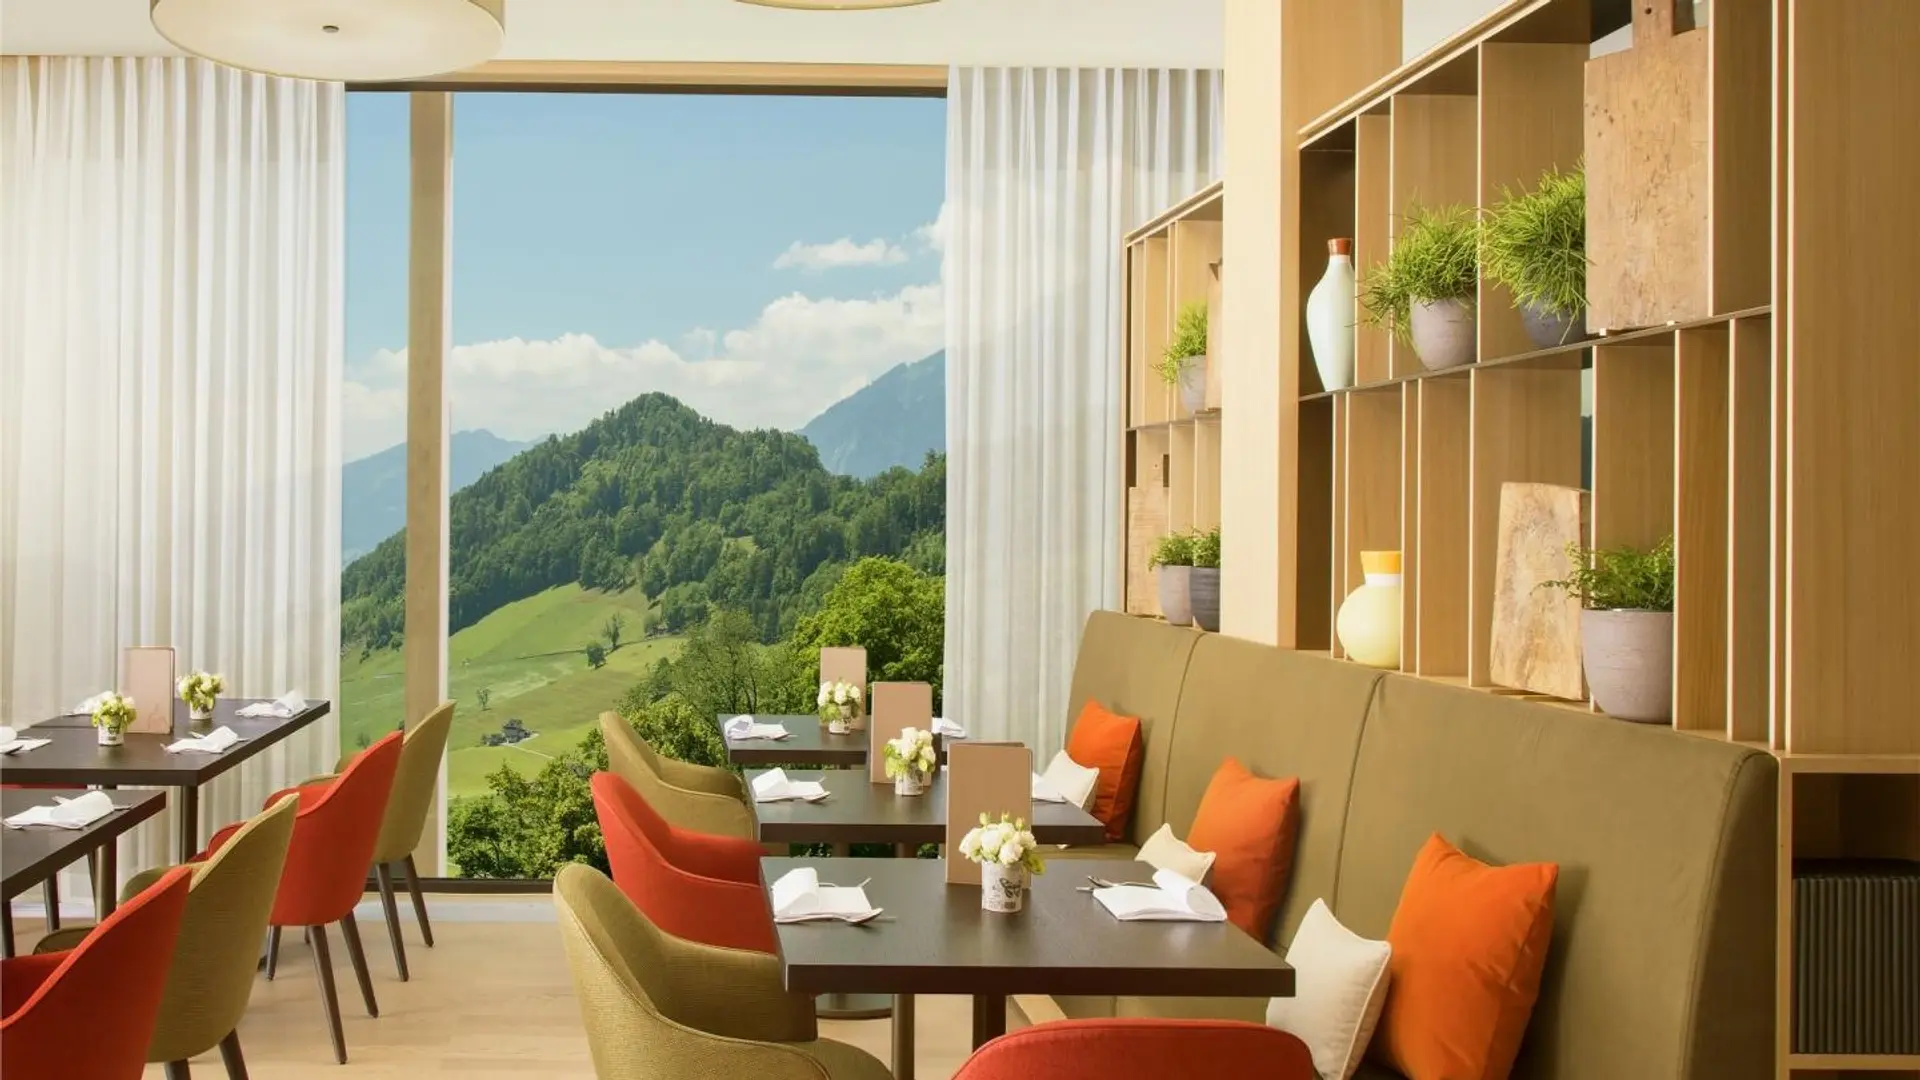 Hotel review Restaurants & Bars' - Bürgenstock Hotels & Resort - 7